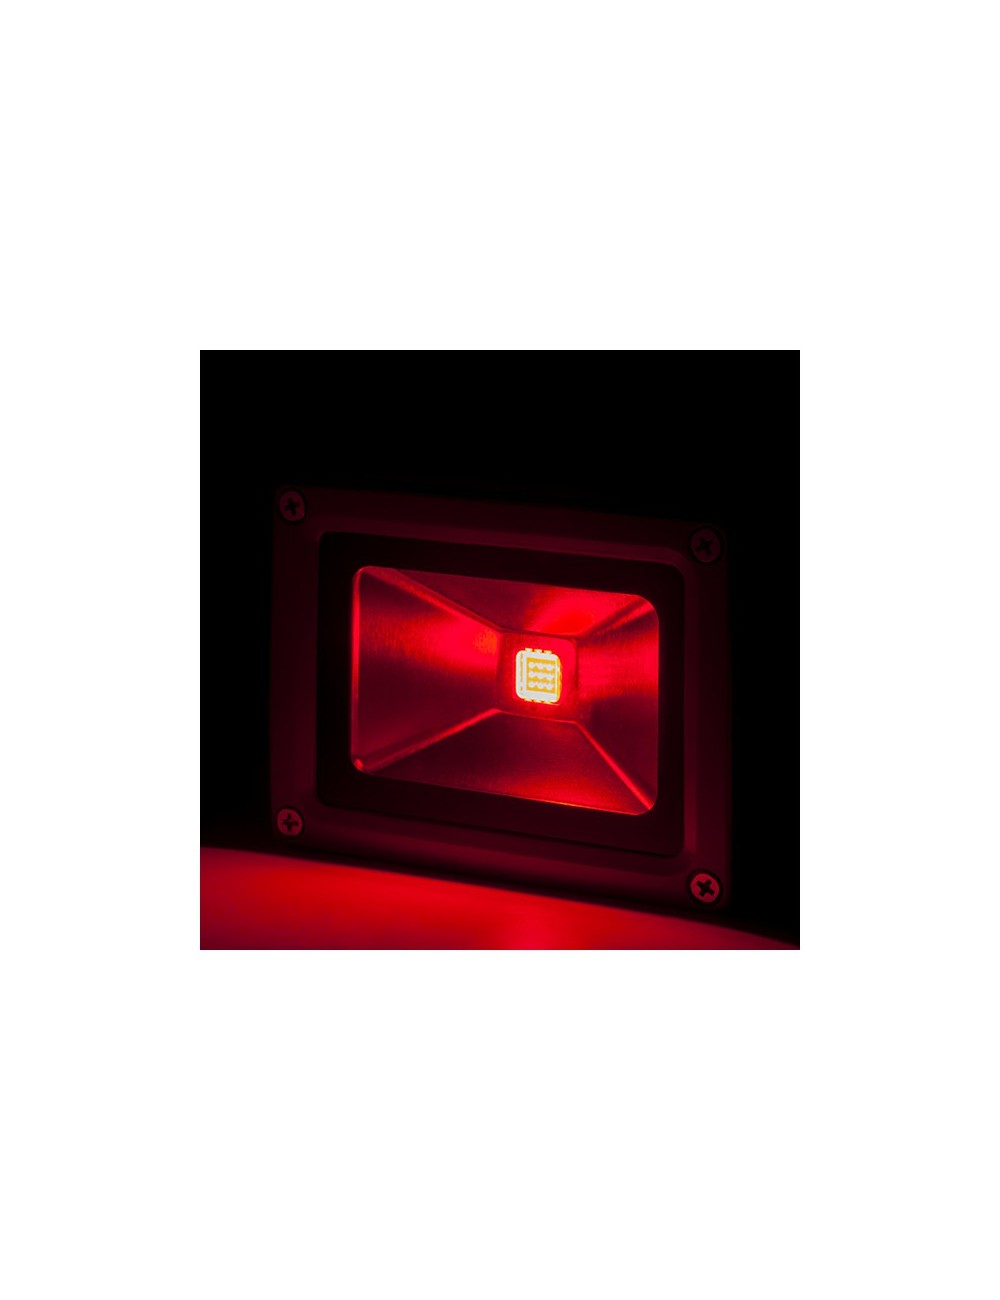 Projecteur LED 10W 850Lm IP65 Brico Rouge 40.000H [BQFS11510-R]